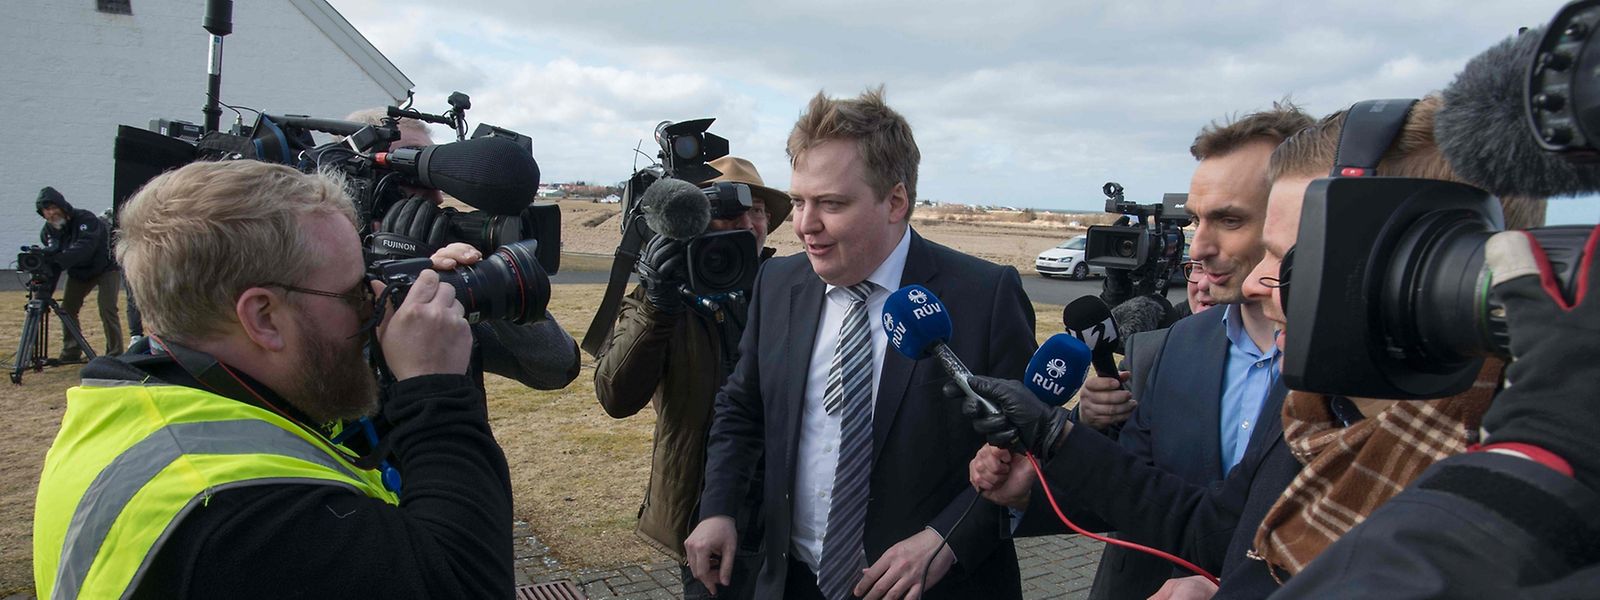 Islands gestürzter Premier Sigmundur David Gunnlaugsson machte sich am Donnerstag auf den Weg zum Präsidenten, um diesem sein Rücktrittsgesuch einzureichen. 